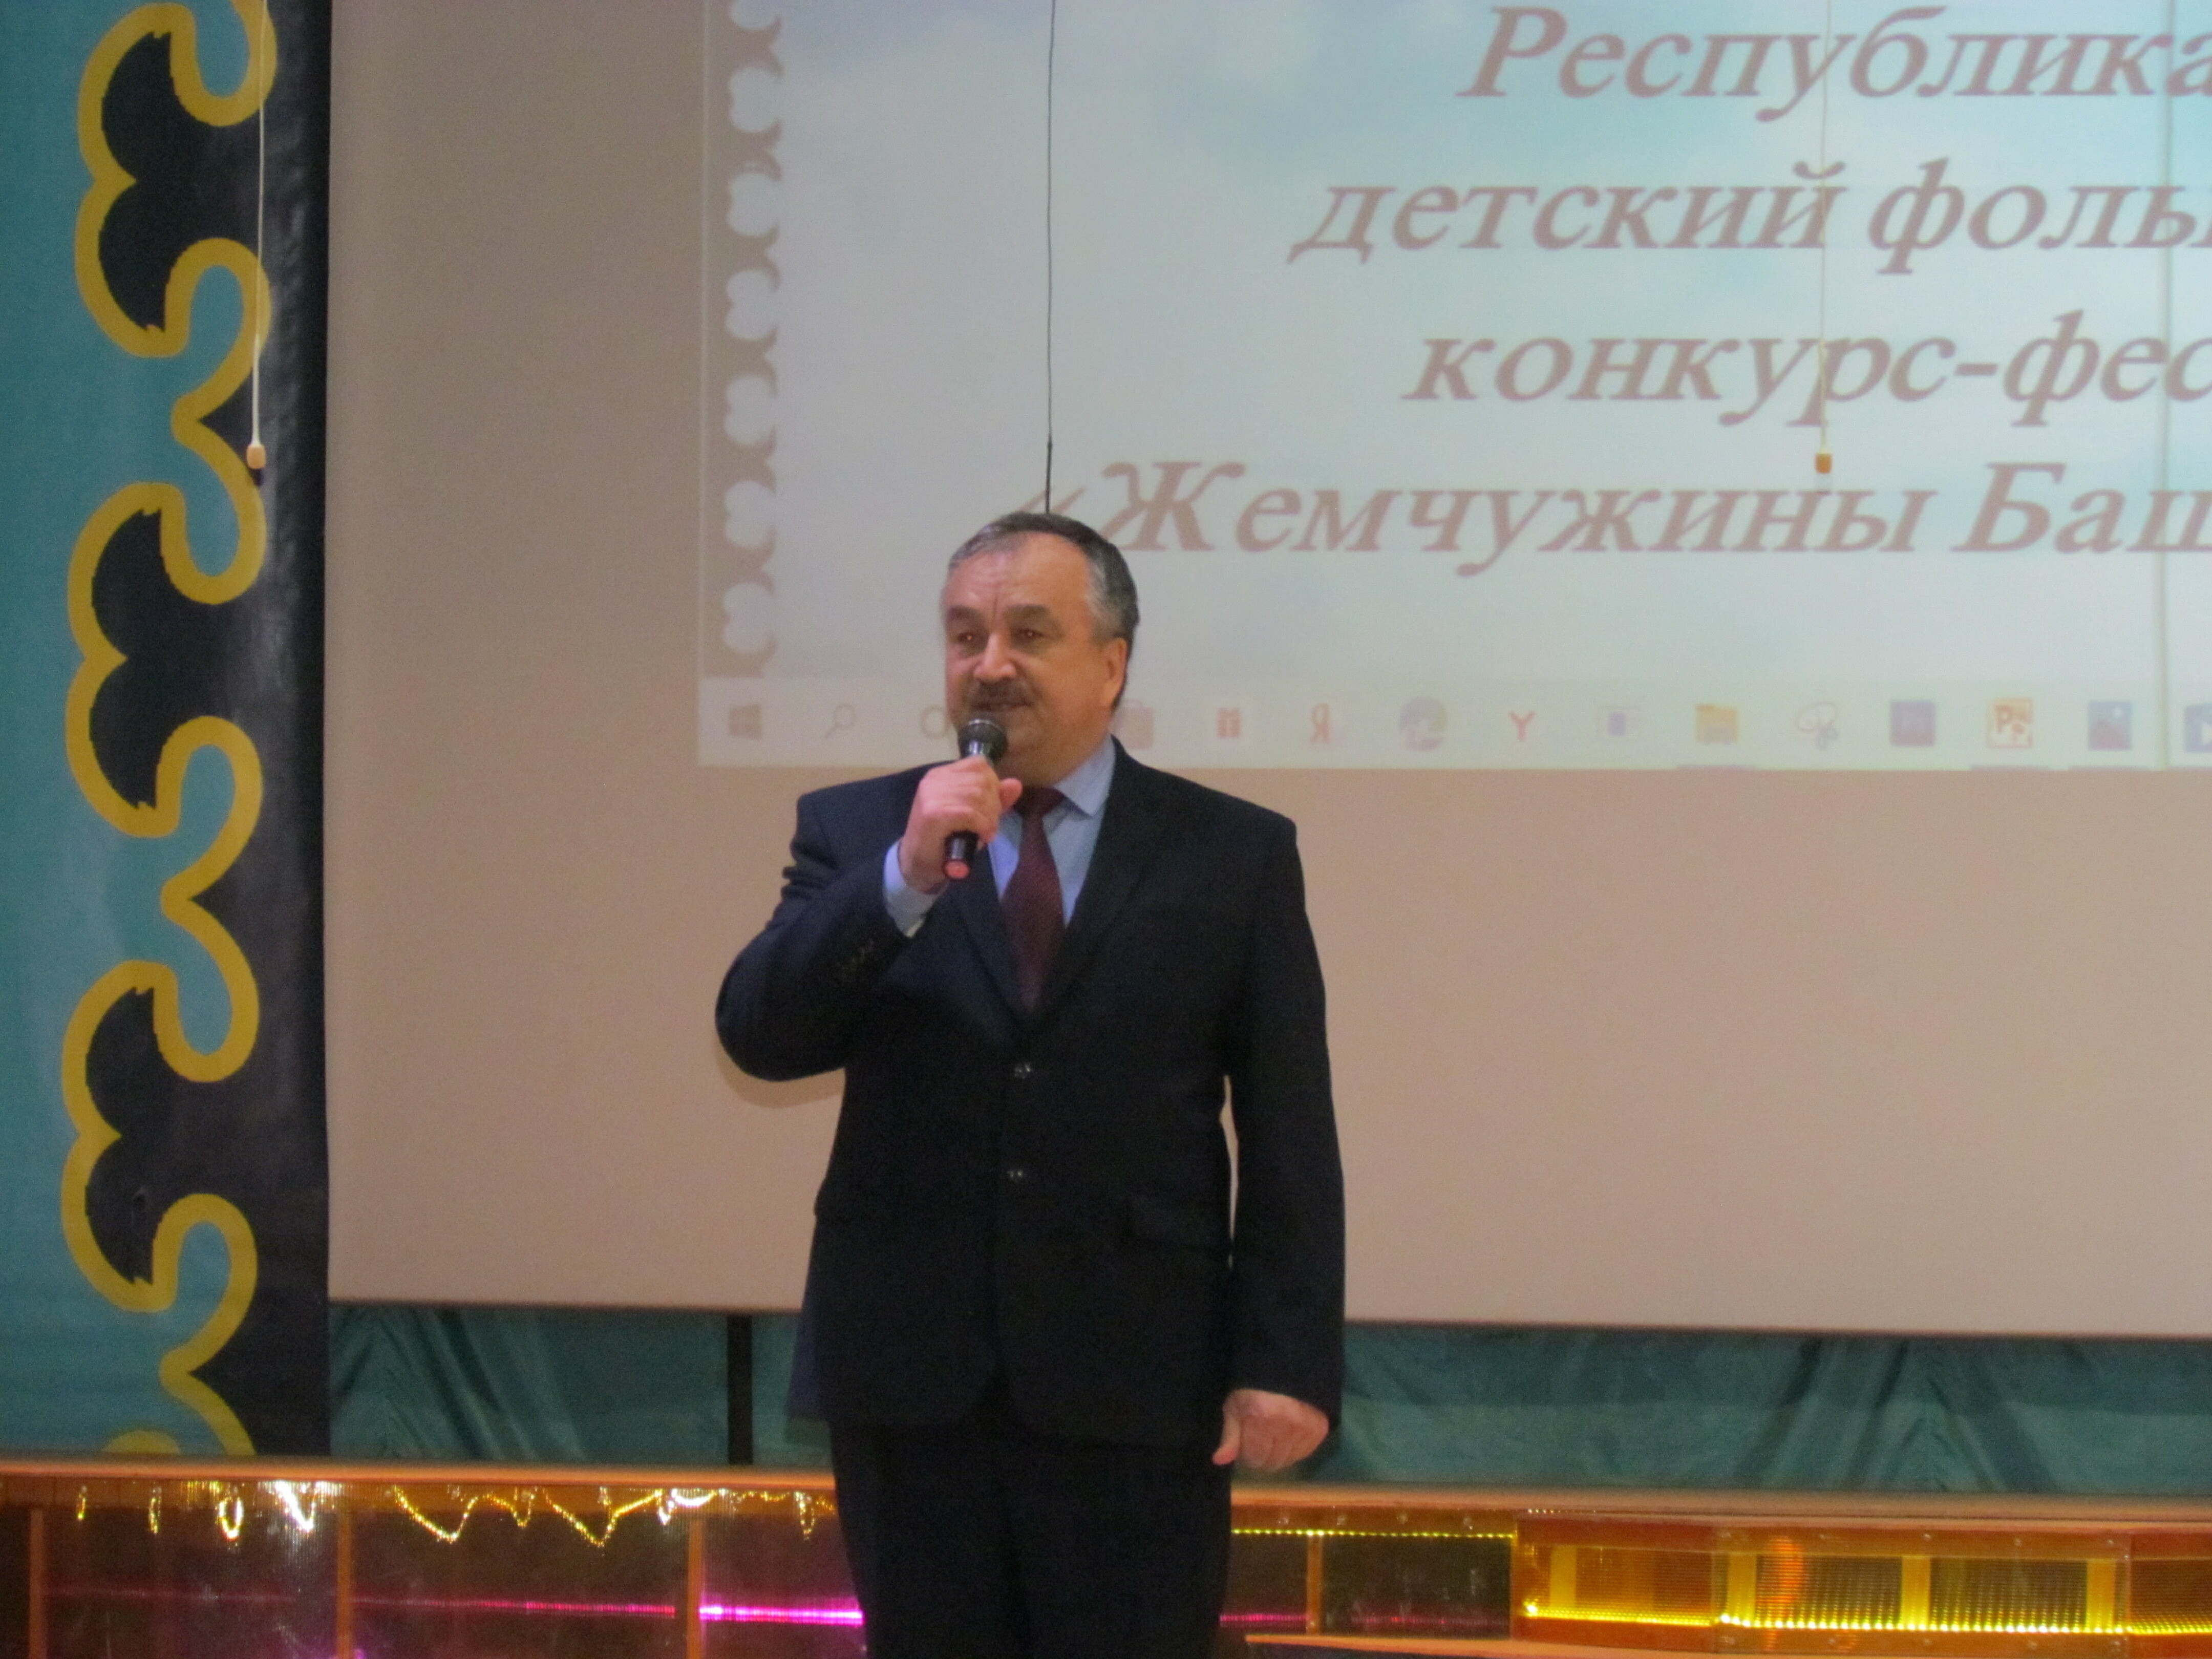 Пятнадцатый республиканский фестиваль "Жемчужины Башкортостана" завершен